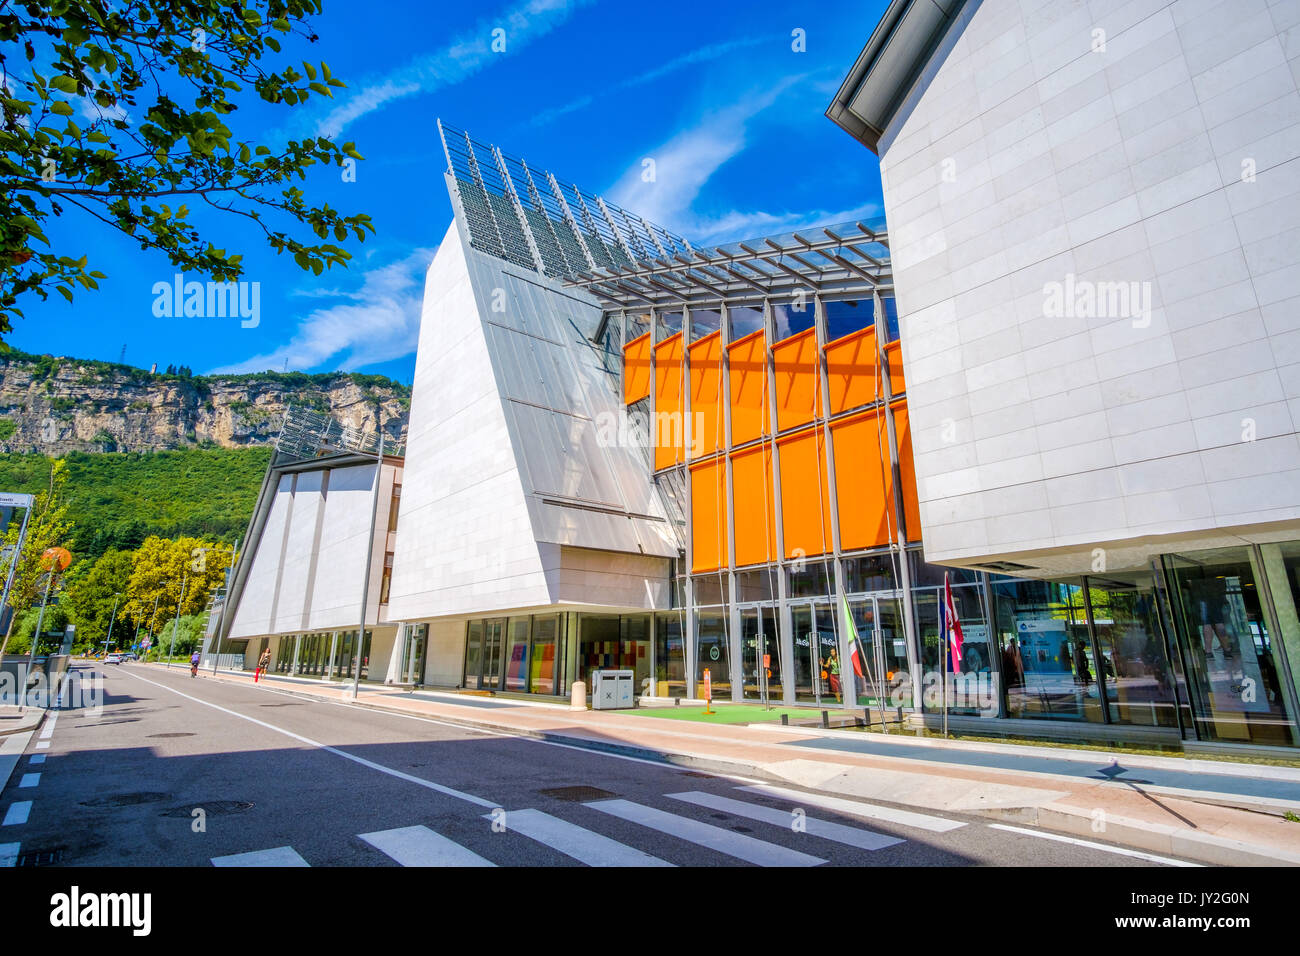 Trento, Italien, 14. August 2017: Außen von MUSE moderne Museum für Naturkunde - Gebäude von dem berühmten Architekten Renzo Piano entworfen Stockfoto